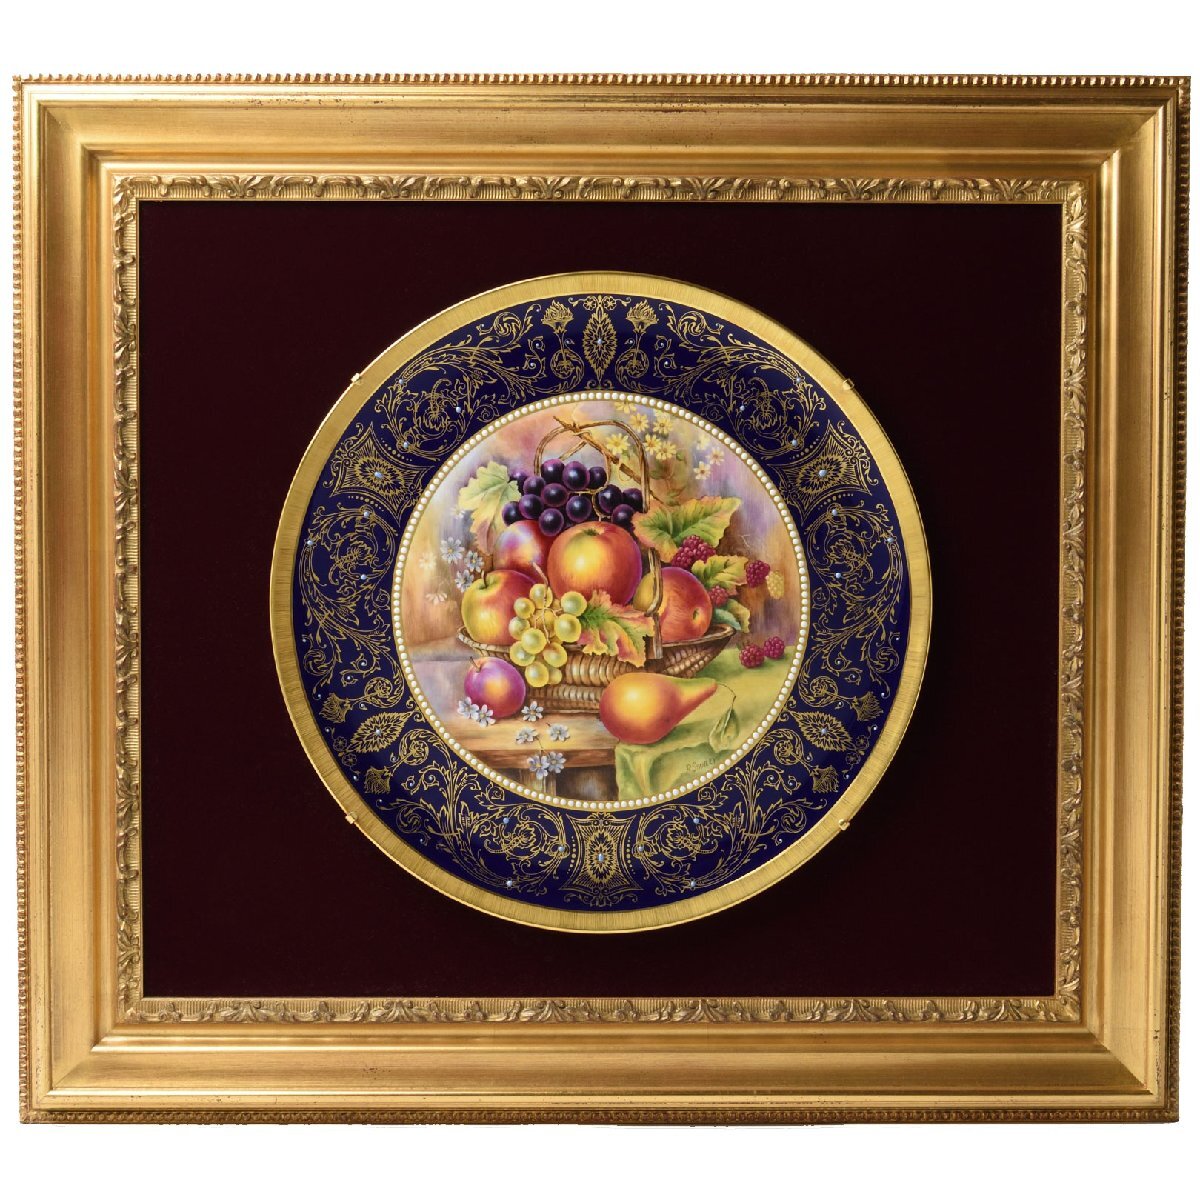 [Royal Worcester] Assiette décorative Fruits peints Edition limitée à 50 exemplaires dans le monde Peinte à la main Grande assiette commémorative limitée Dédicacée par le peintre Livraison gratuite, vaisselle, Par marque, Worcester royal